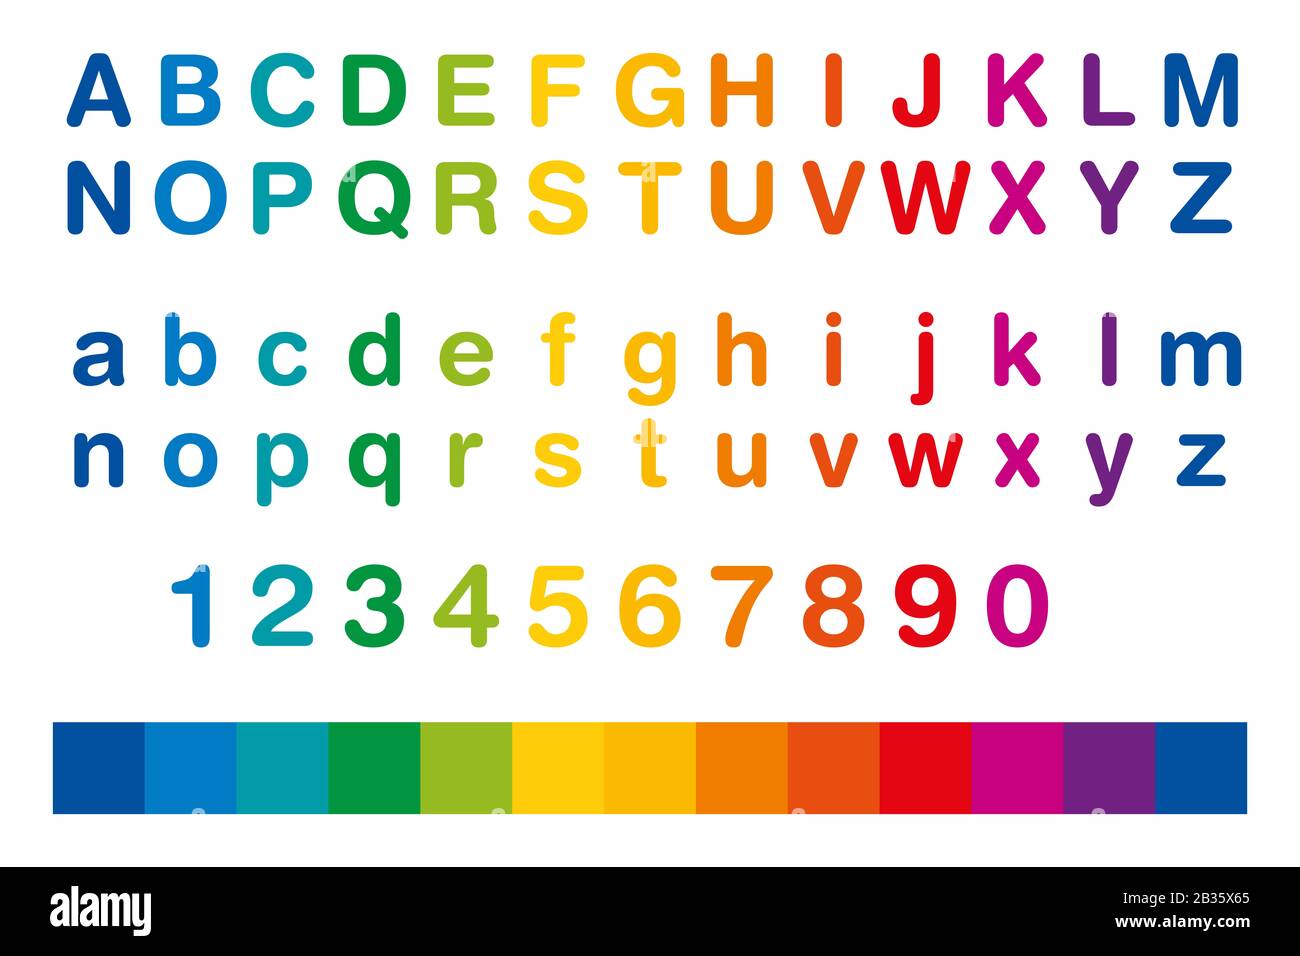 Alfabeto e numeri colorati in una riga. Serie standard di lettere da A a Z  in maiuscolo e in minuscolo, anche i dieci numeri da uno a zero Foto stock  - Alamy